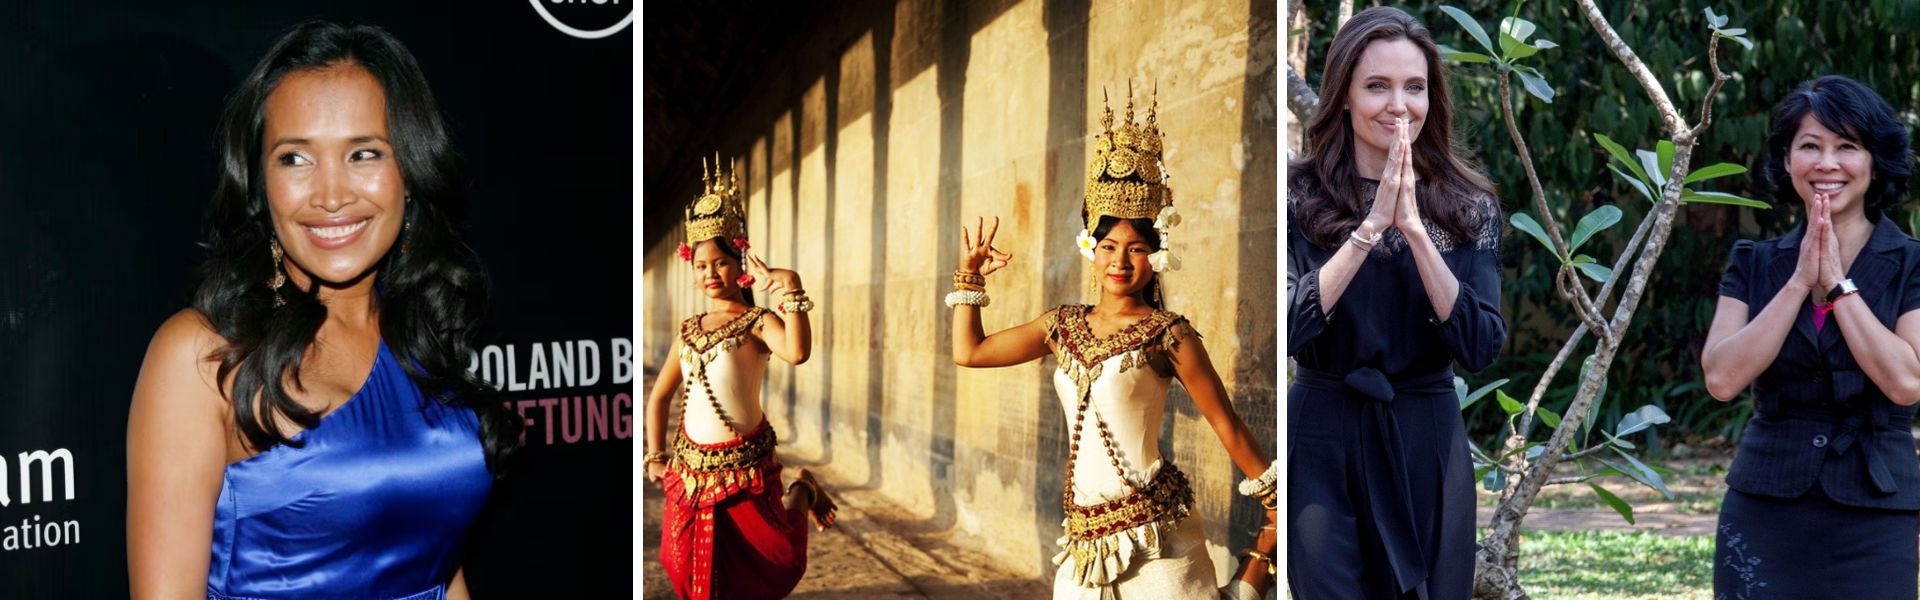 Las mujeres camboyanas: Un Viaje de la Tradición a la Modernidad